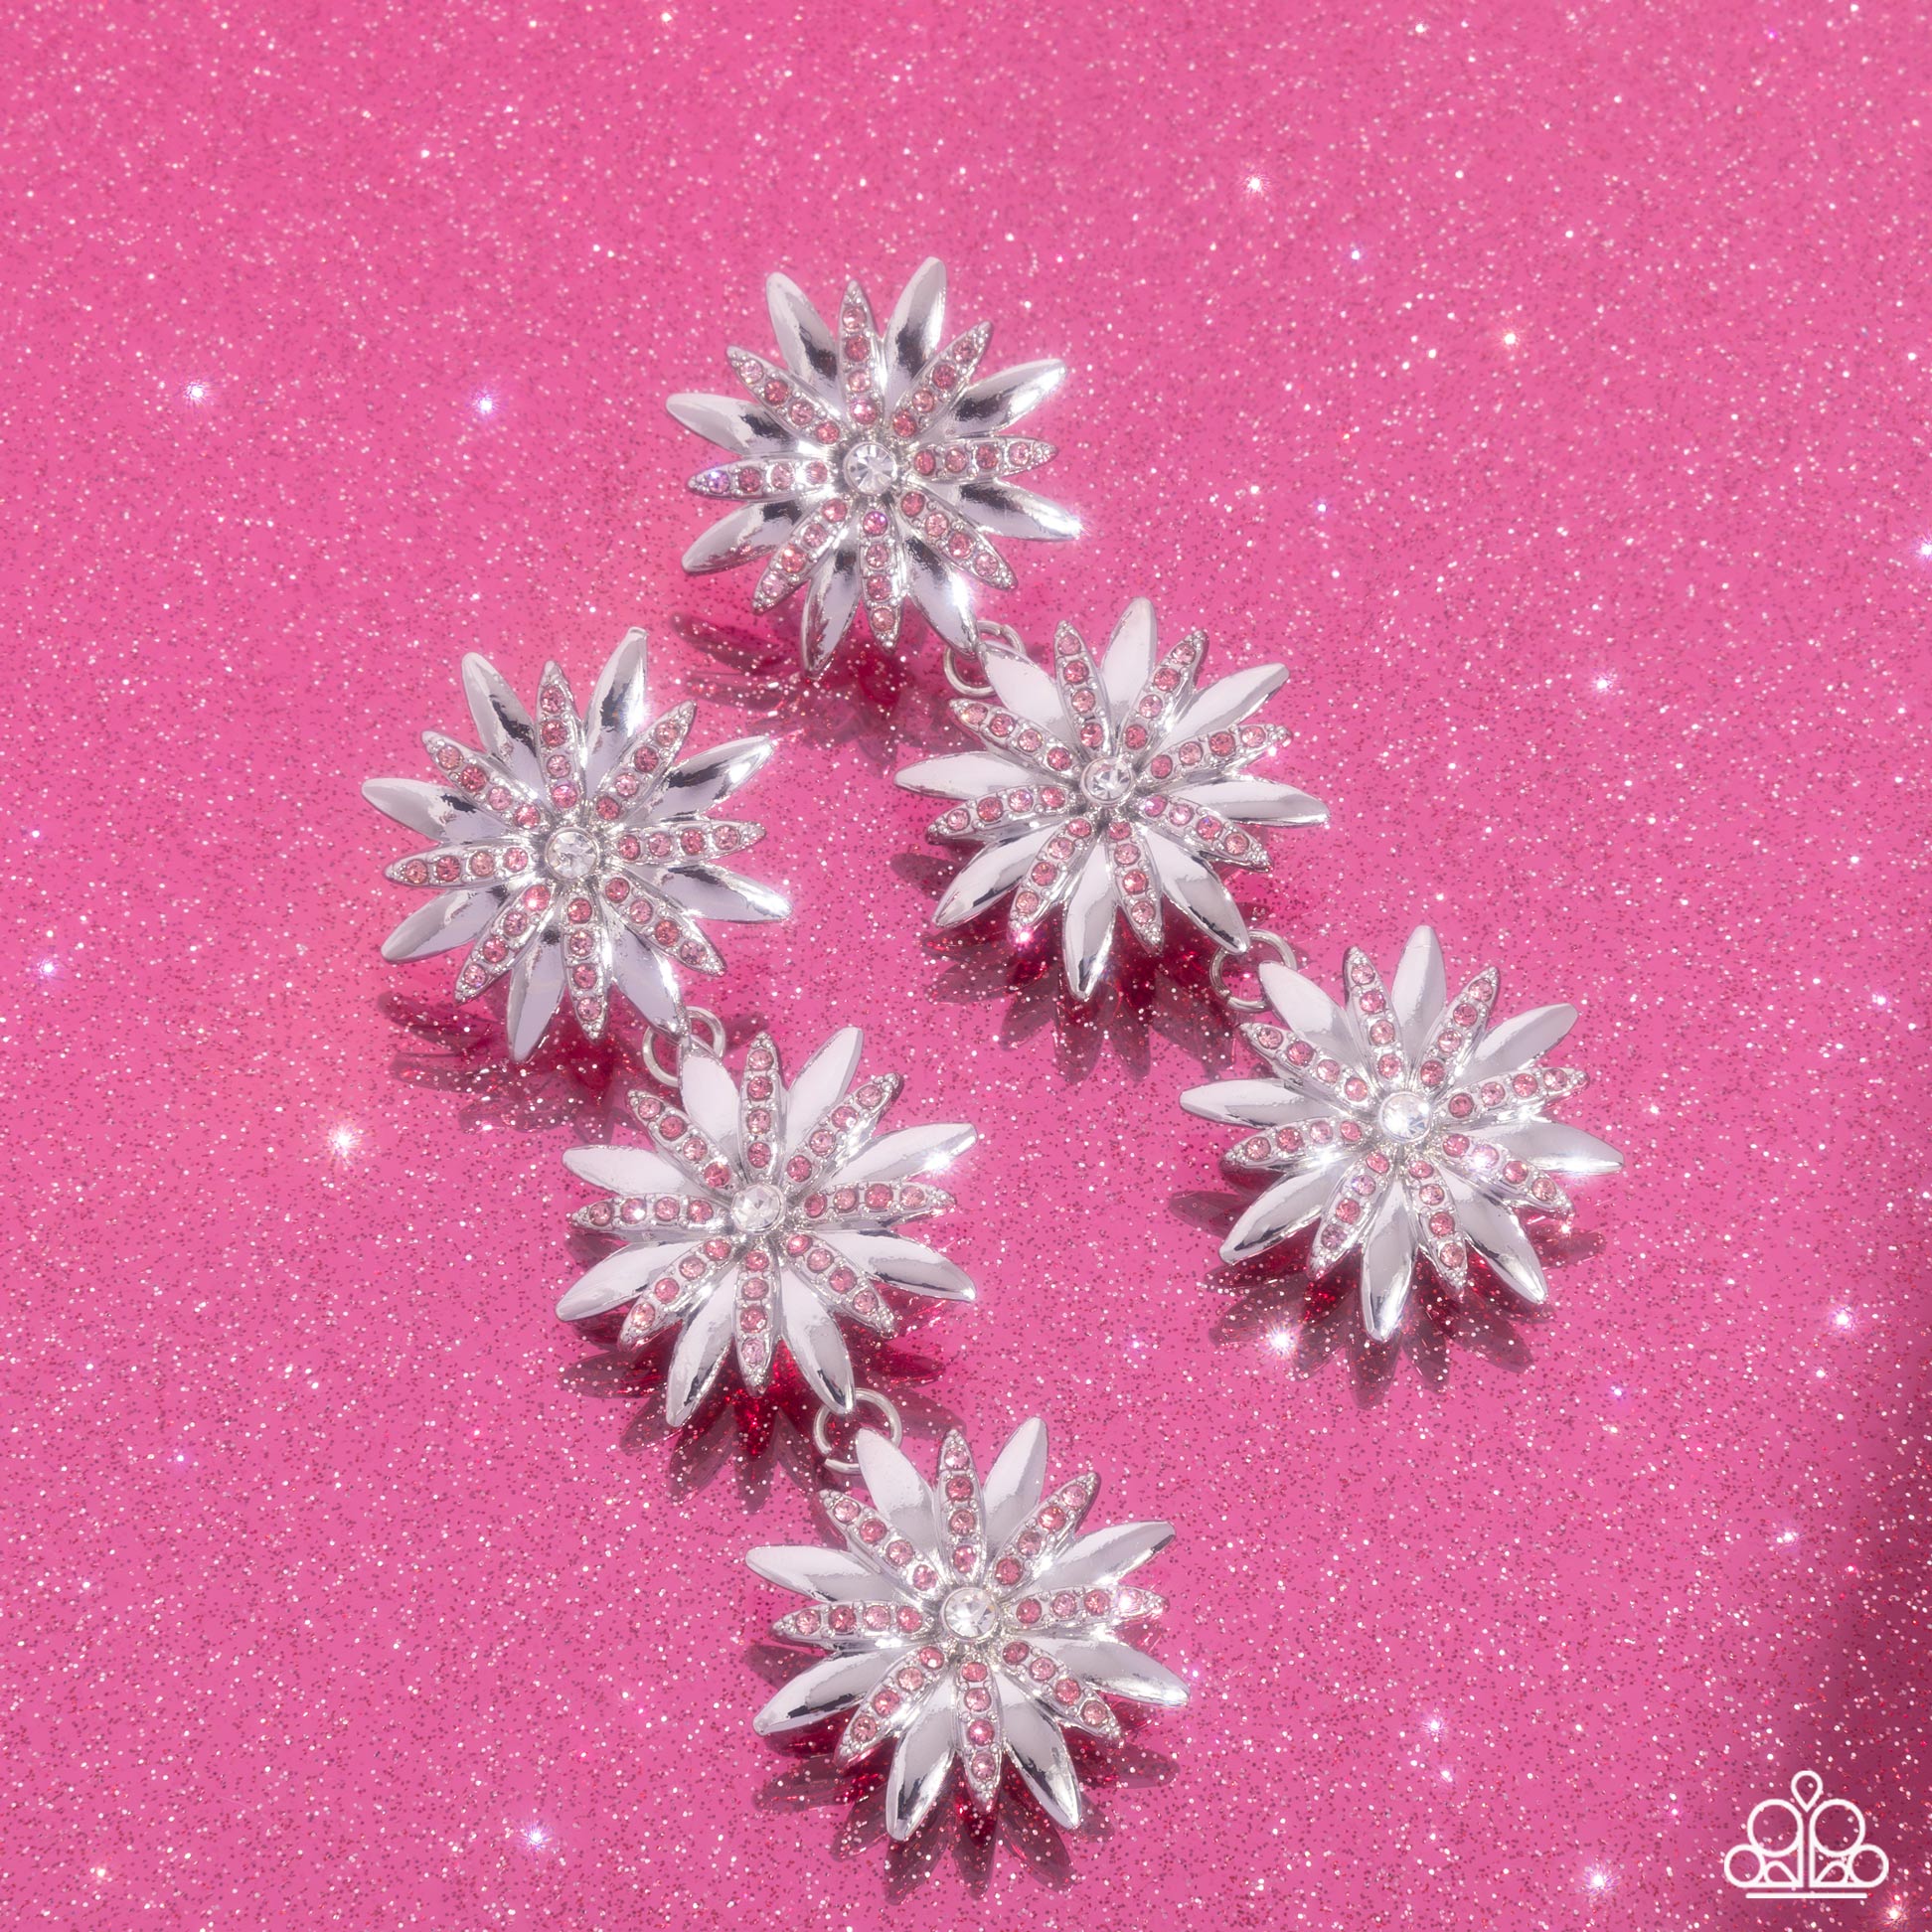 Petaled Princess - pink - Paparazzi earrings